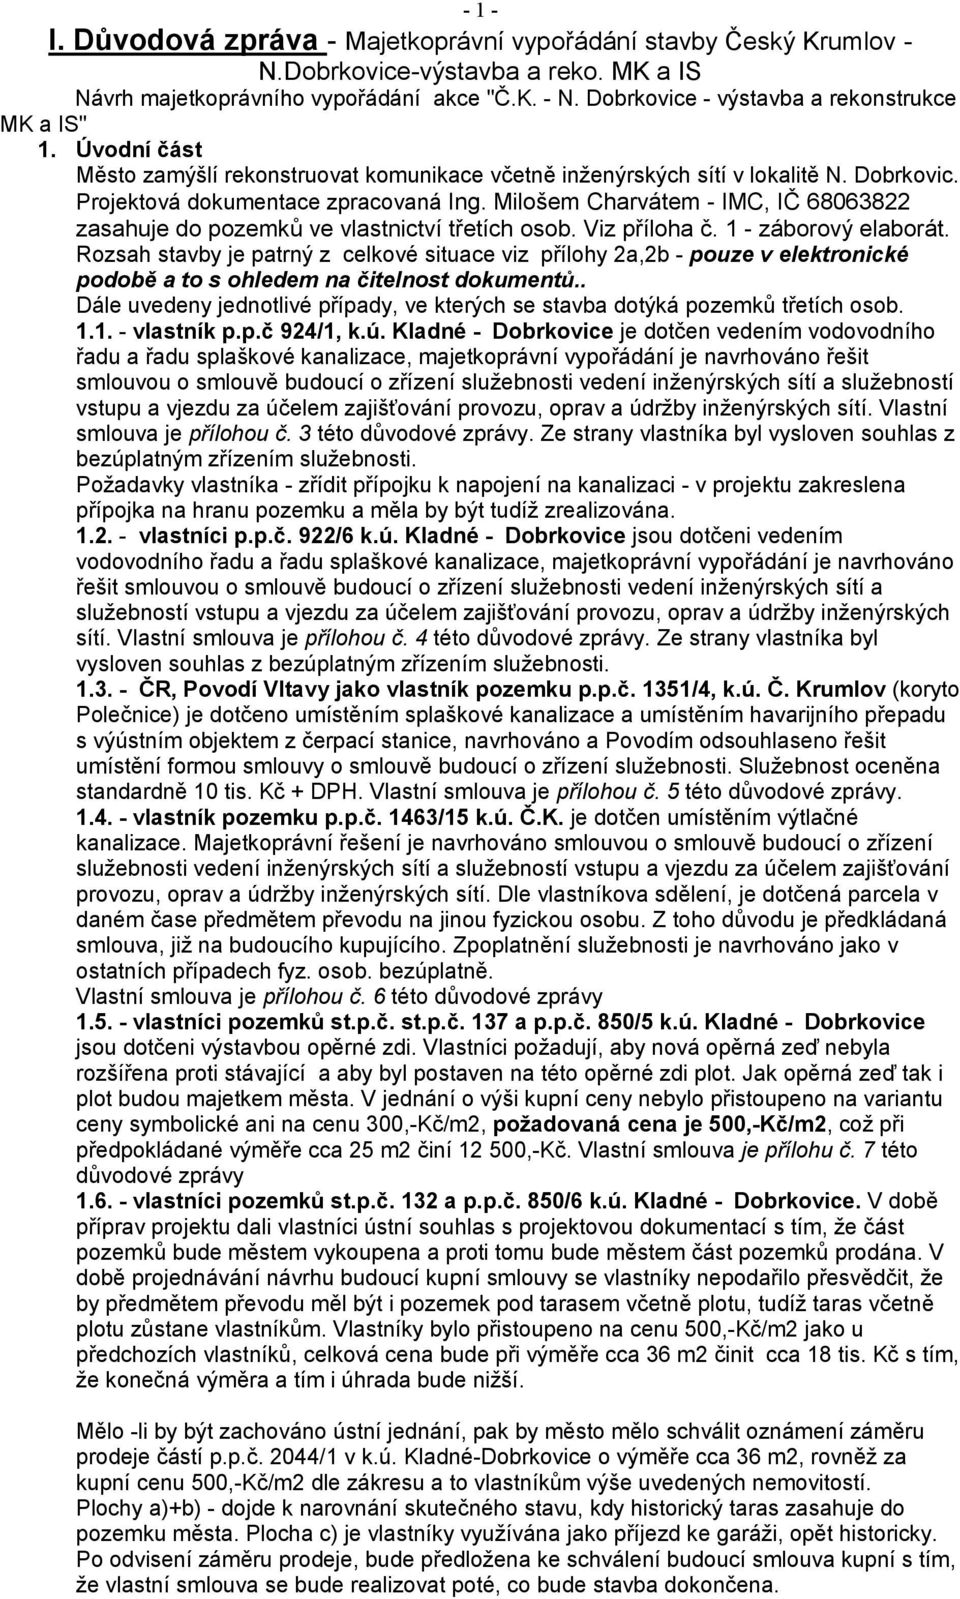 Milošem Charvátem - IMC, IČ 68063822 zasahuje do pozemků ve vlastnictví třetích osob. Viz příloha č. 1 - záborový elaborát.